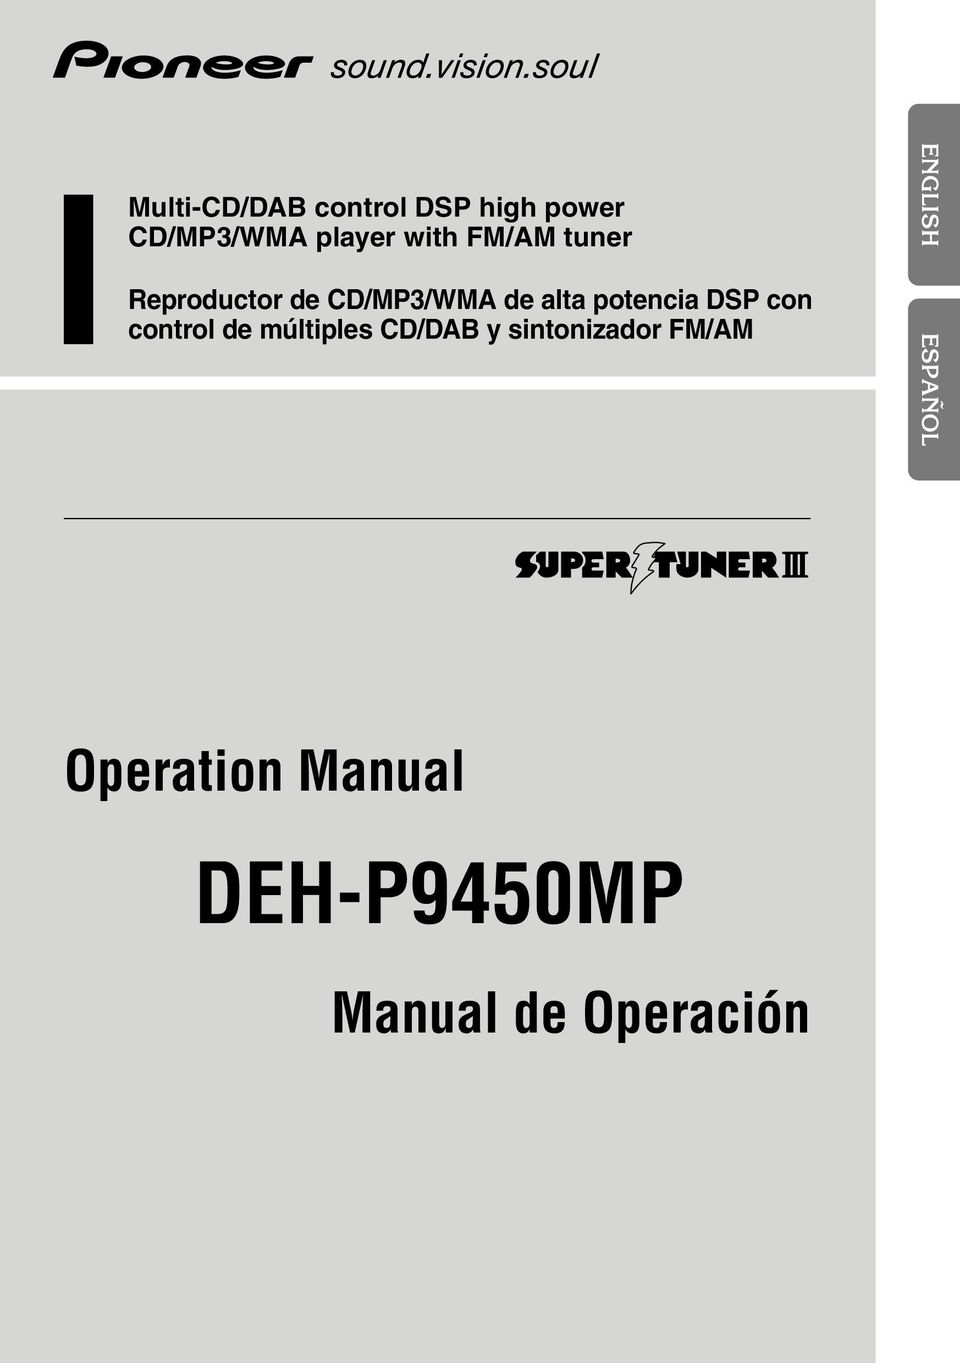 y sintonizador FM/AM Operation Manual DEH-P9100R Operation Manual Manual de